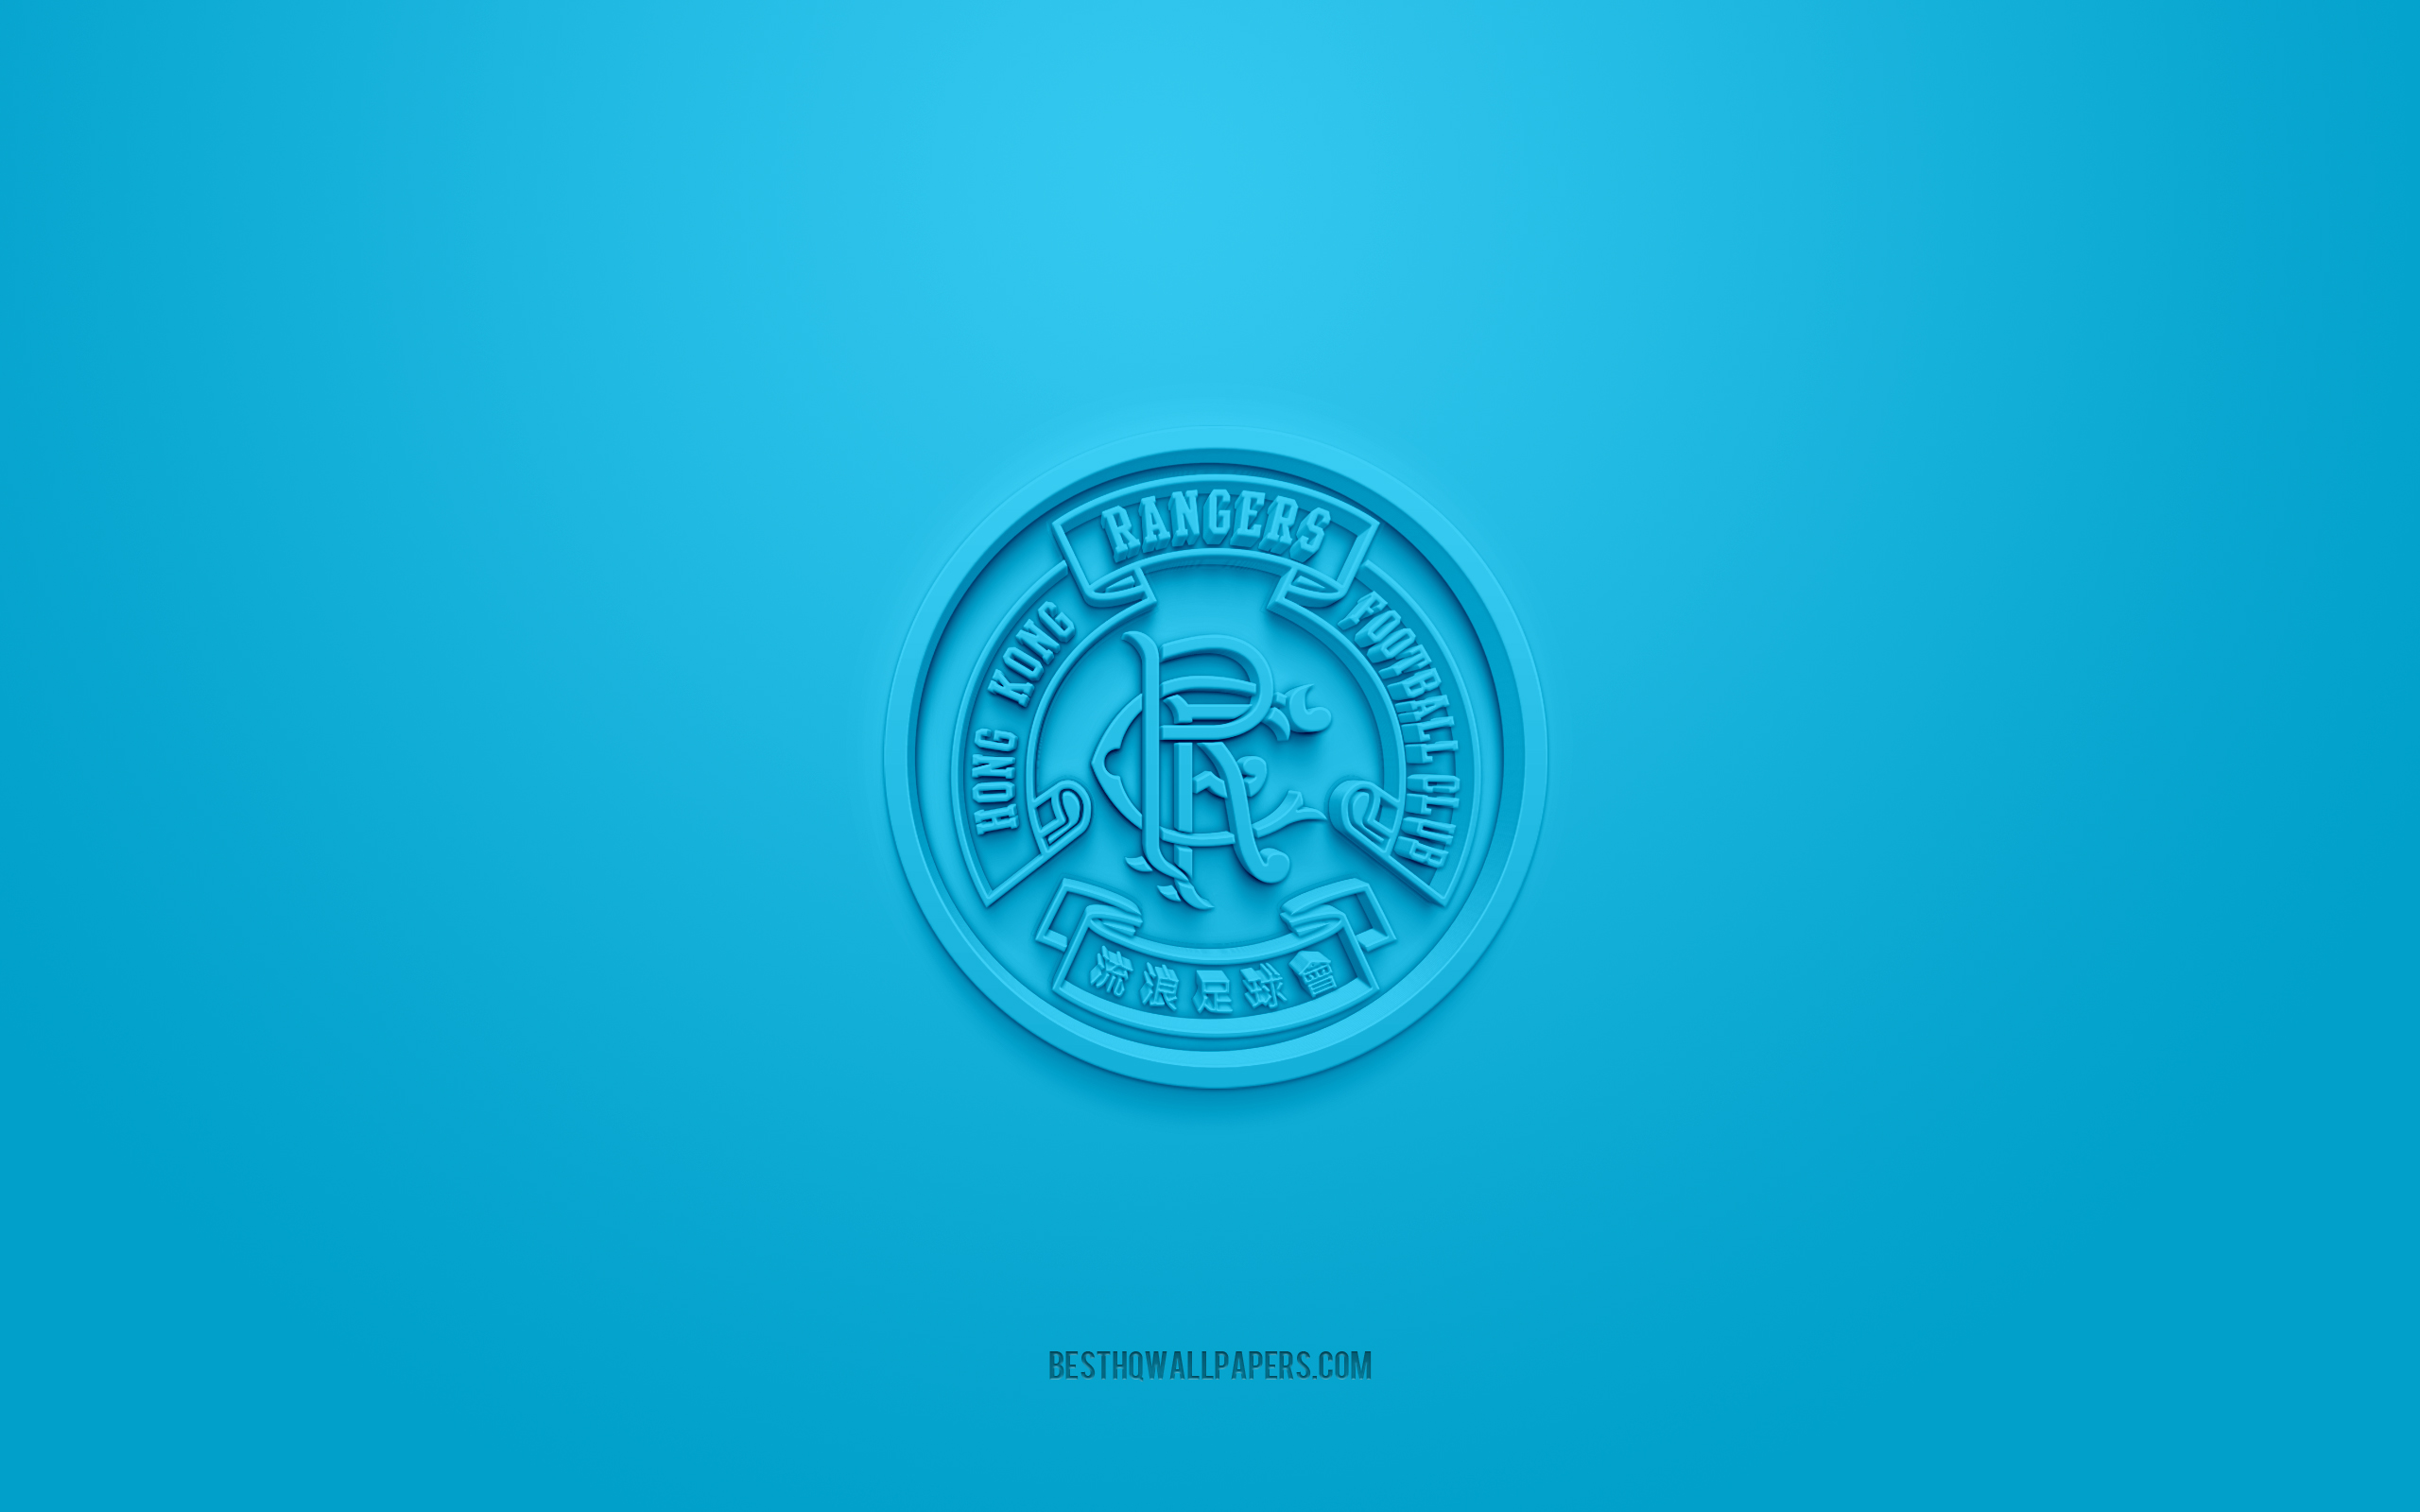 Download wallpapers Hong Kong Rangers FC, creative 3D logo, blue ...